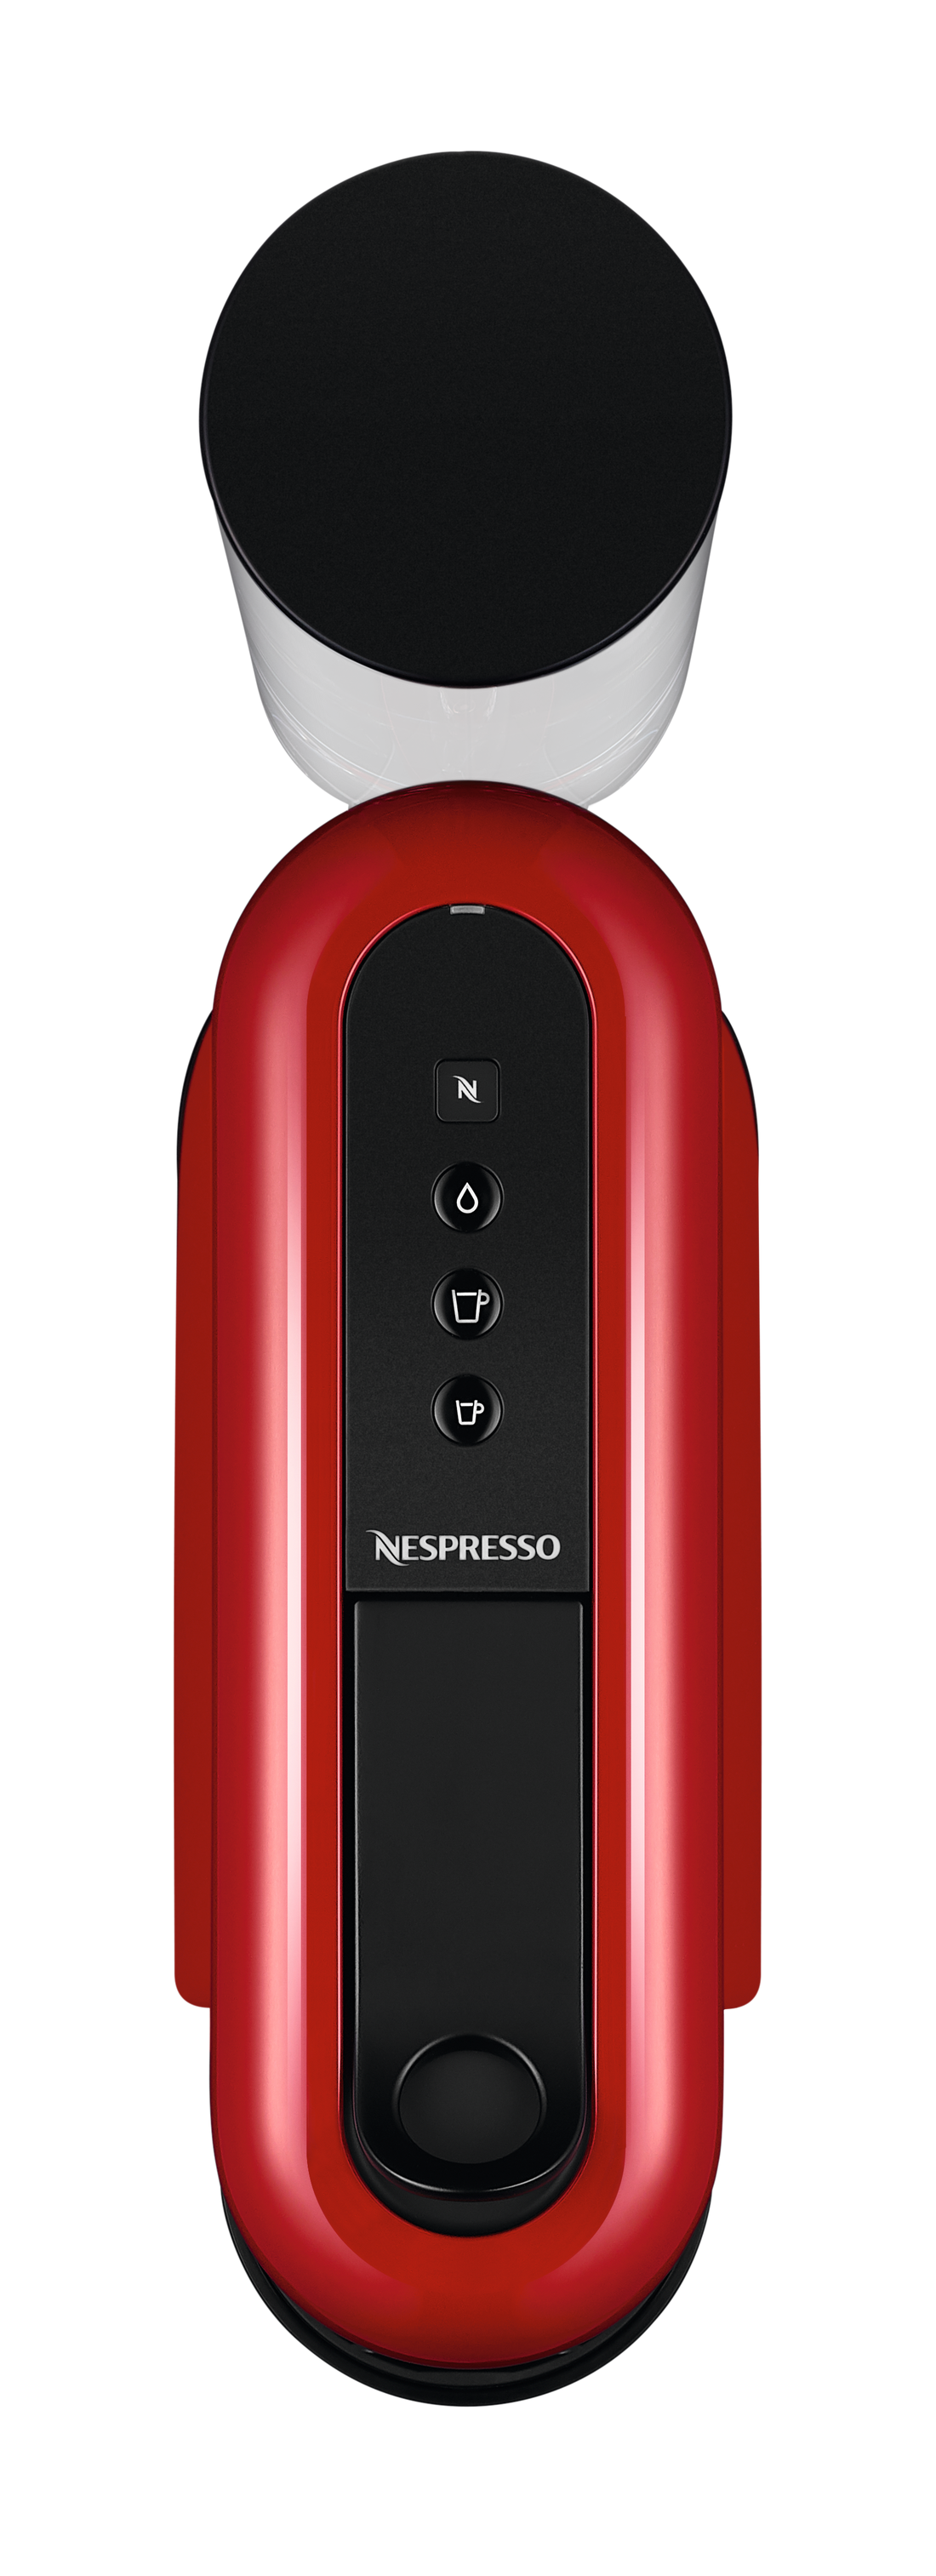 Nespresso Essenza Plus Espresso Machine by DeLonghi - Red